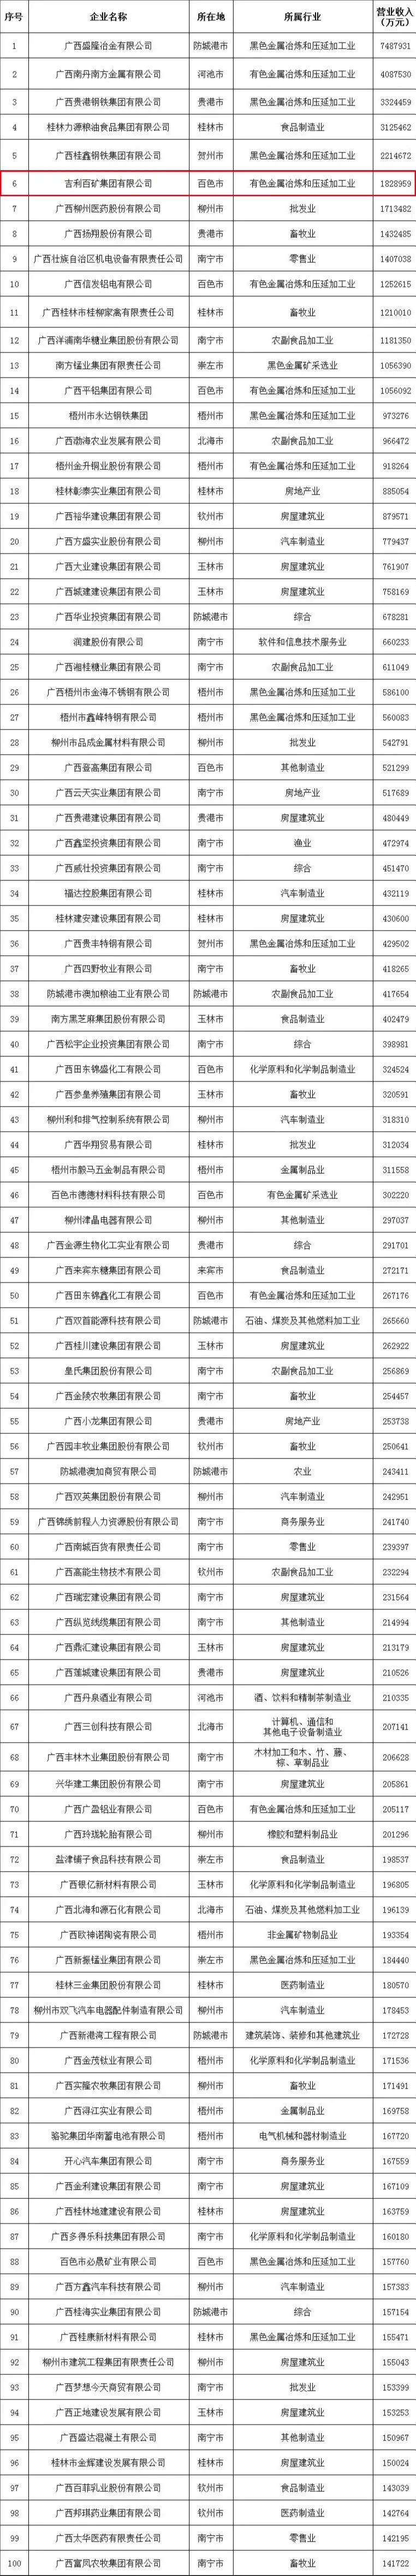 吉利百礦集團位列2022廣西民營企業100強第6位